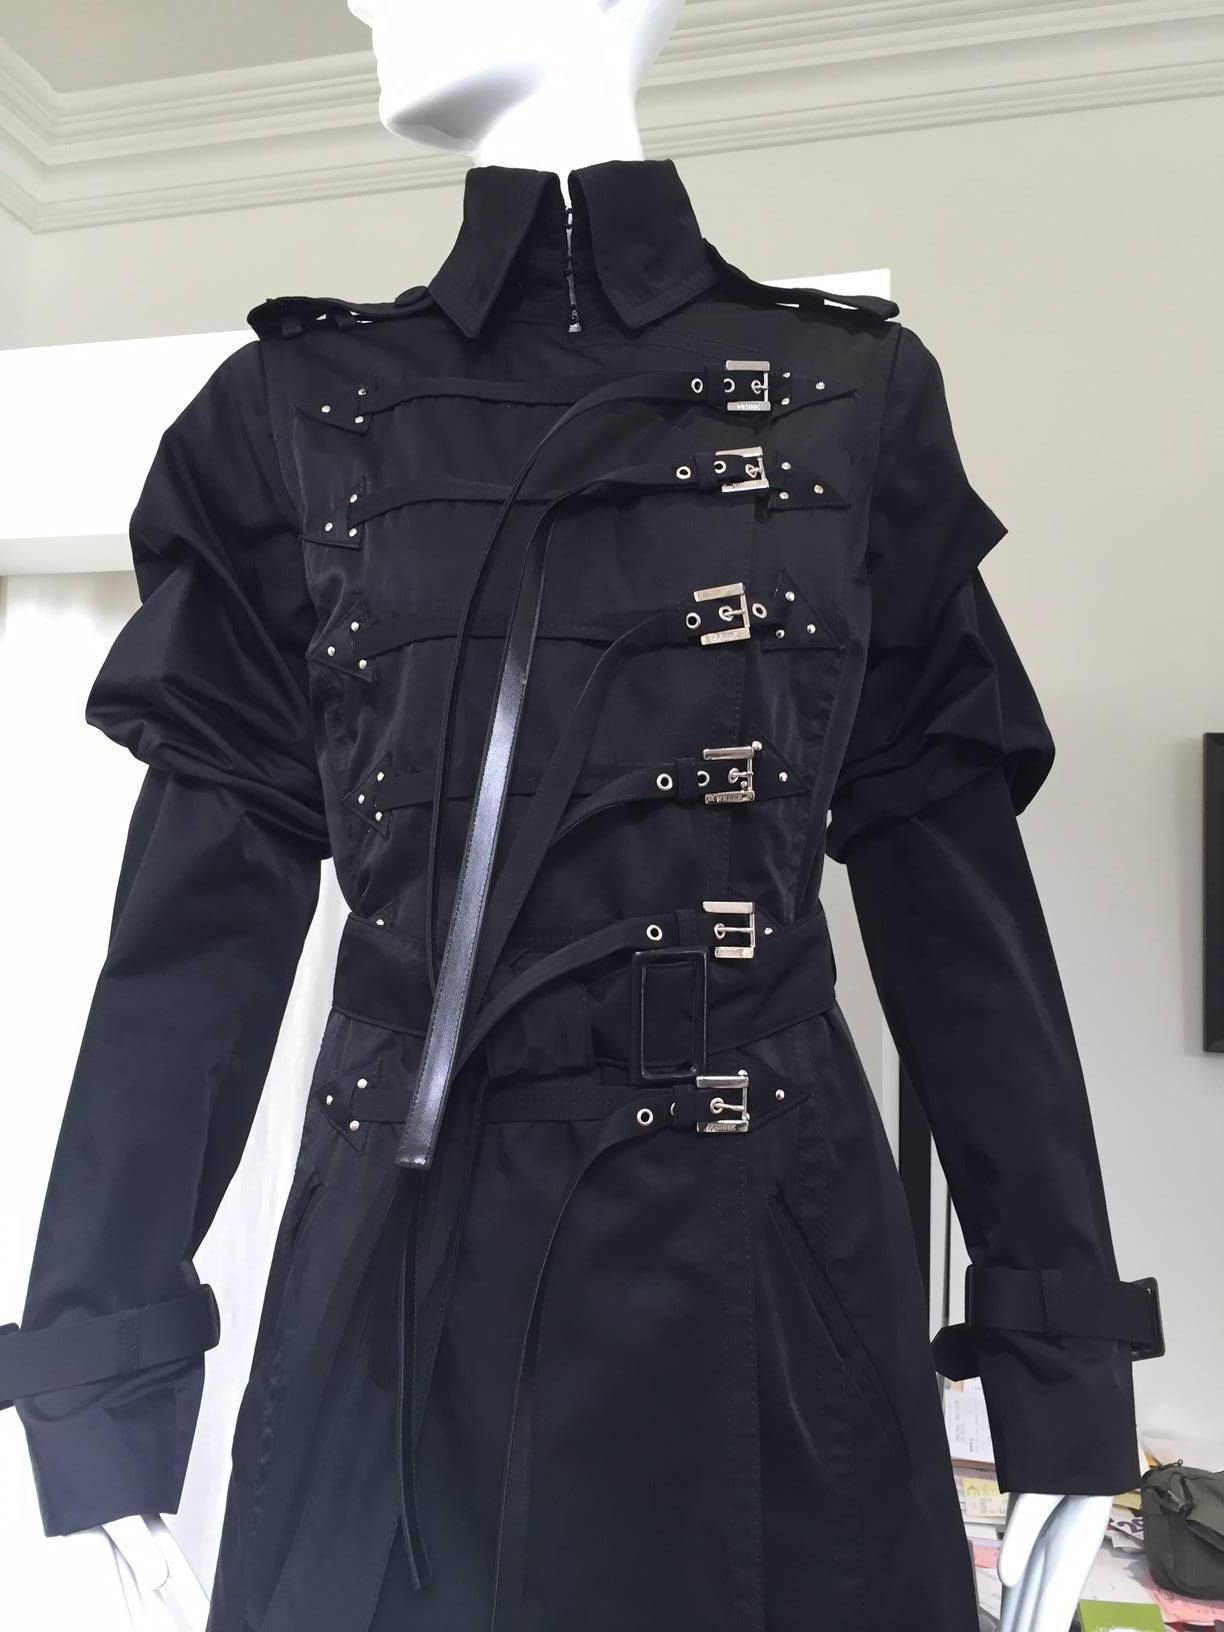 Vintage 1990s Gianfranco Ferre black bondage style nylon Trench coat.
marked size: 40/ Medium - Large
Measurement:
Shoulder: 16"/ Bust: 19"/ Waist: 34"/ Hip: 38"/ 
sleeve length: 24" with 10" circumference. Coat length: